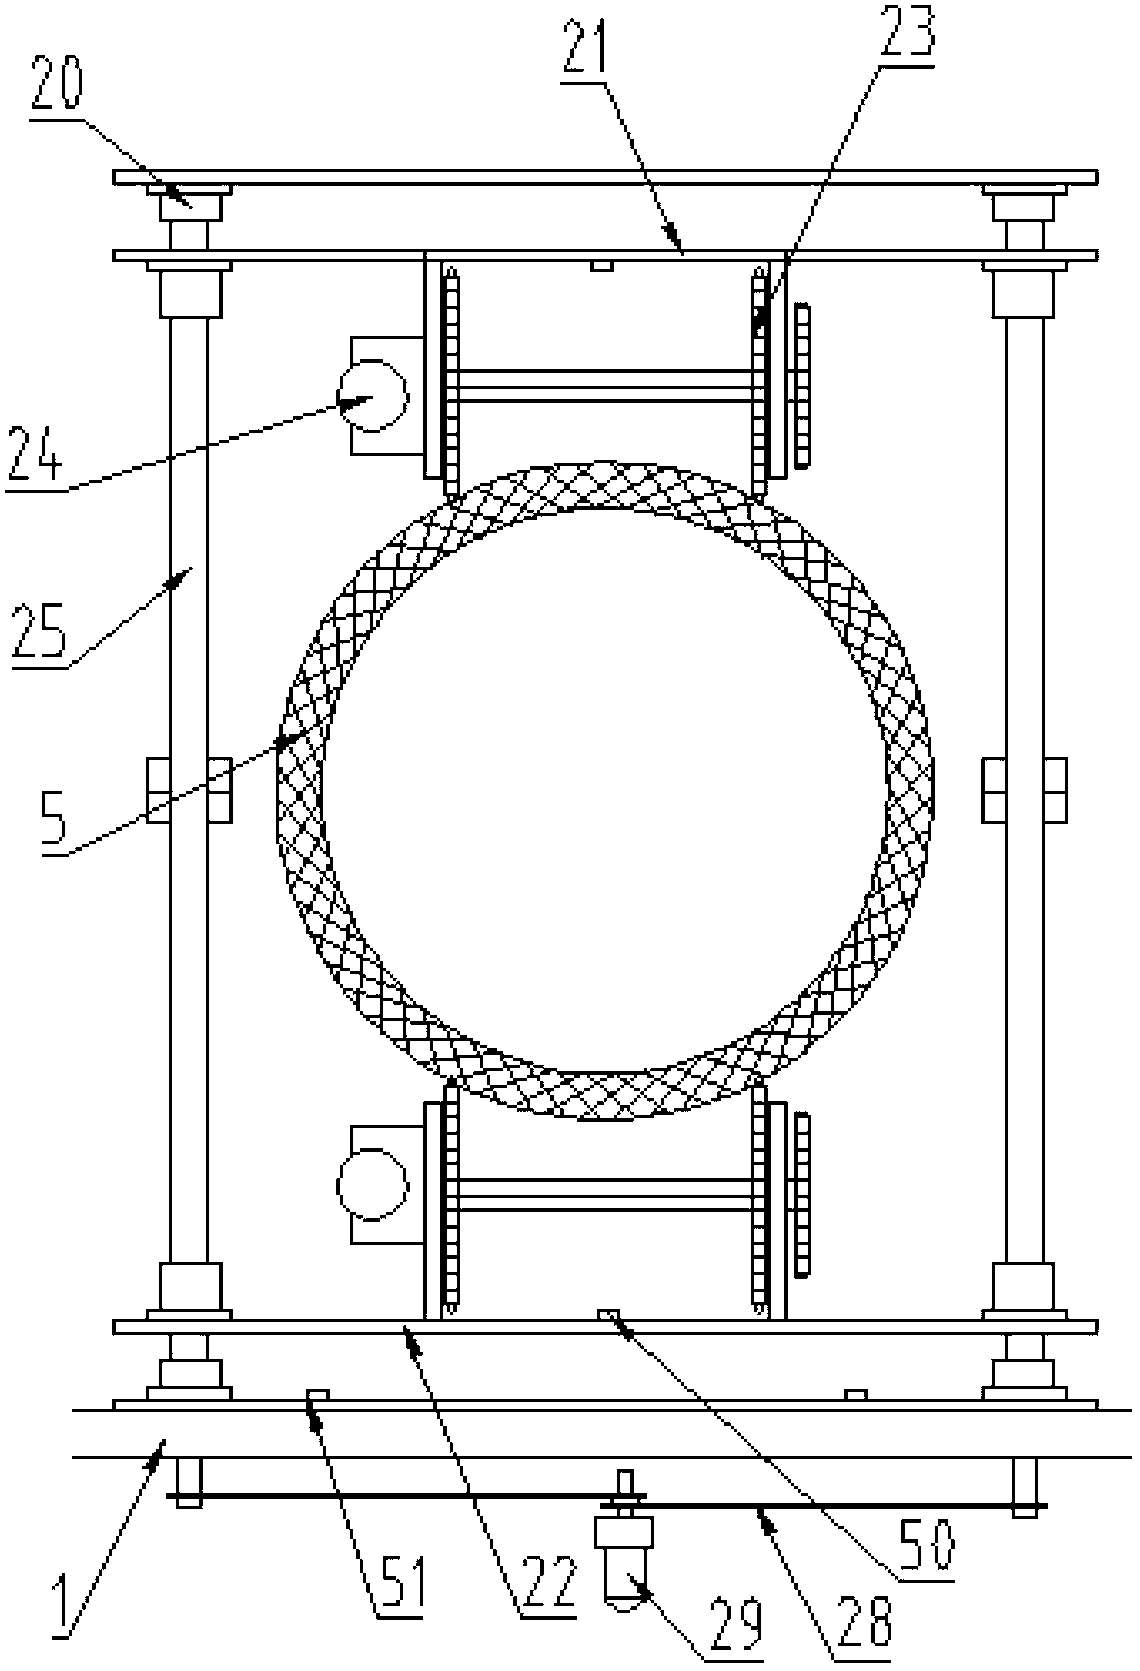 Plastic tube milling crushing machine